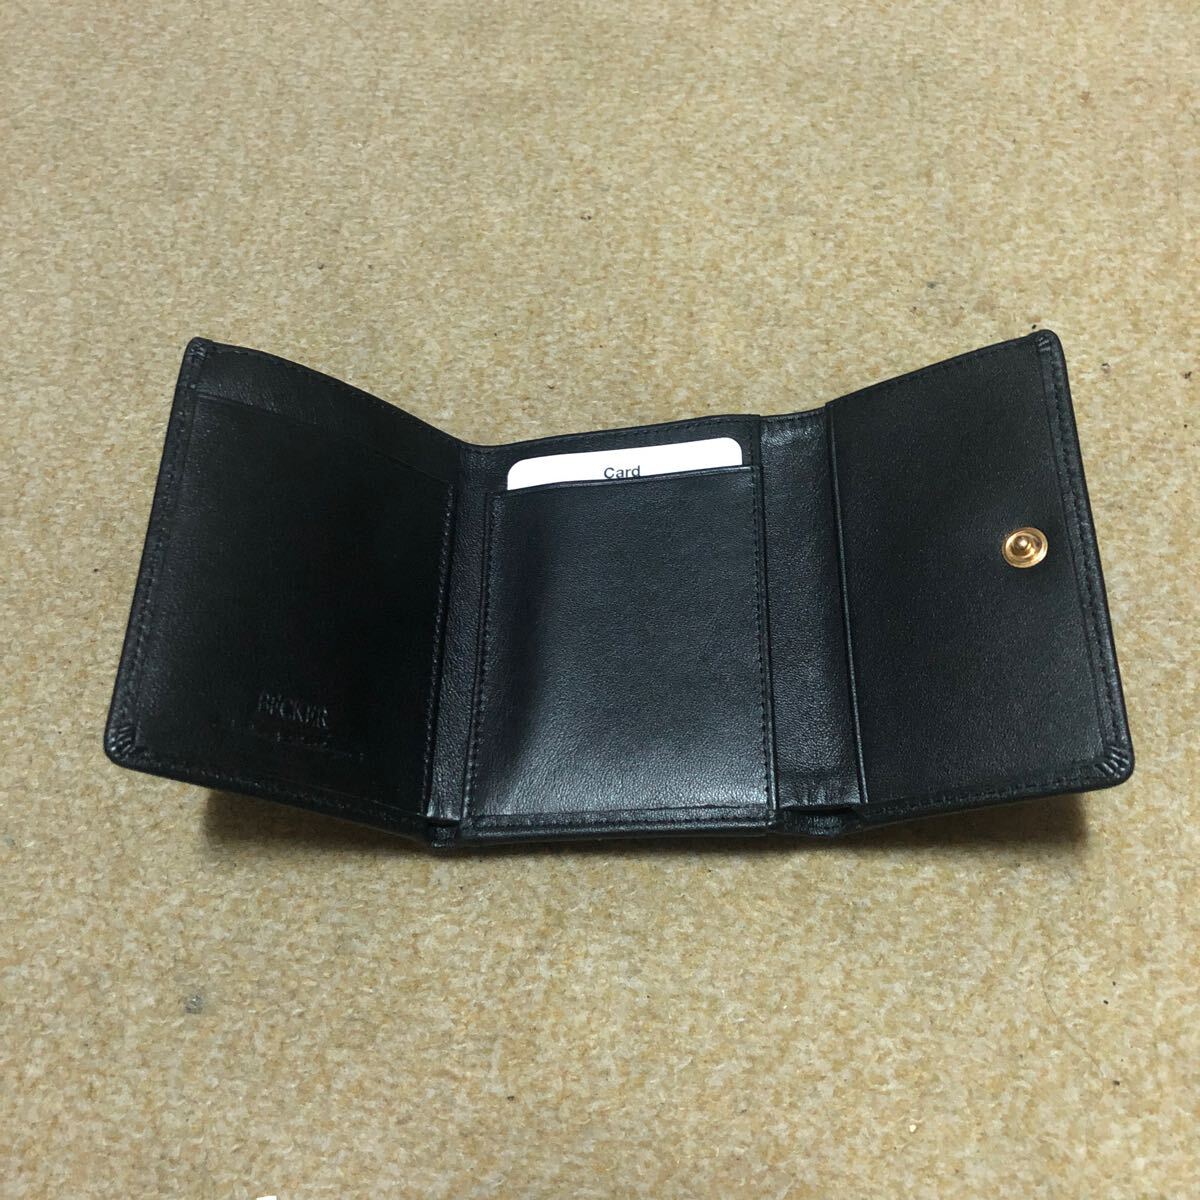 ドイツ ベッカー社製三つ折財布 仔牛革 極小財布 ブラック の画像5